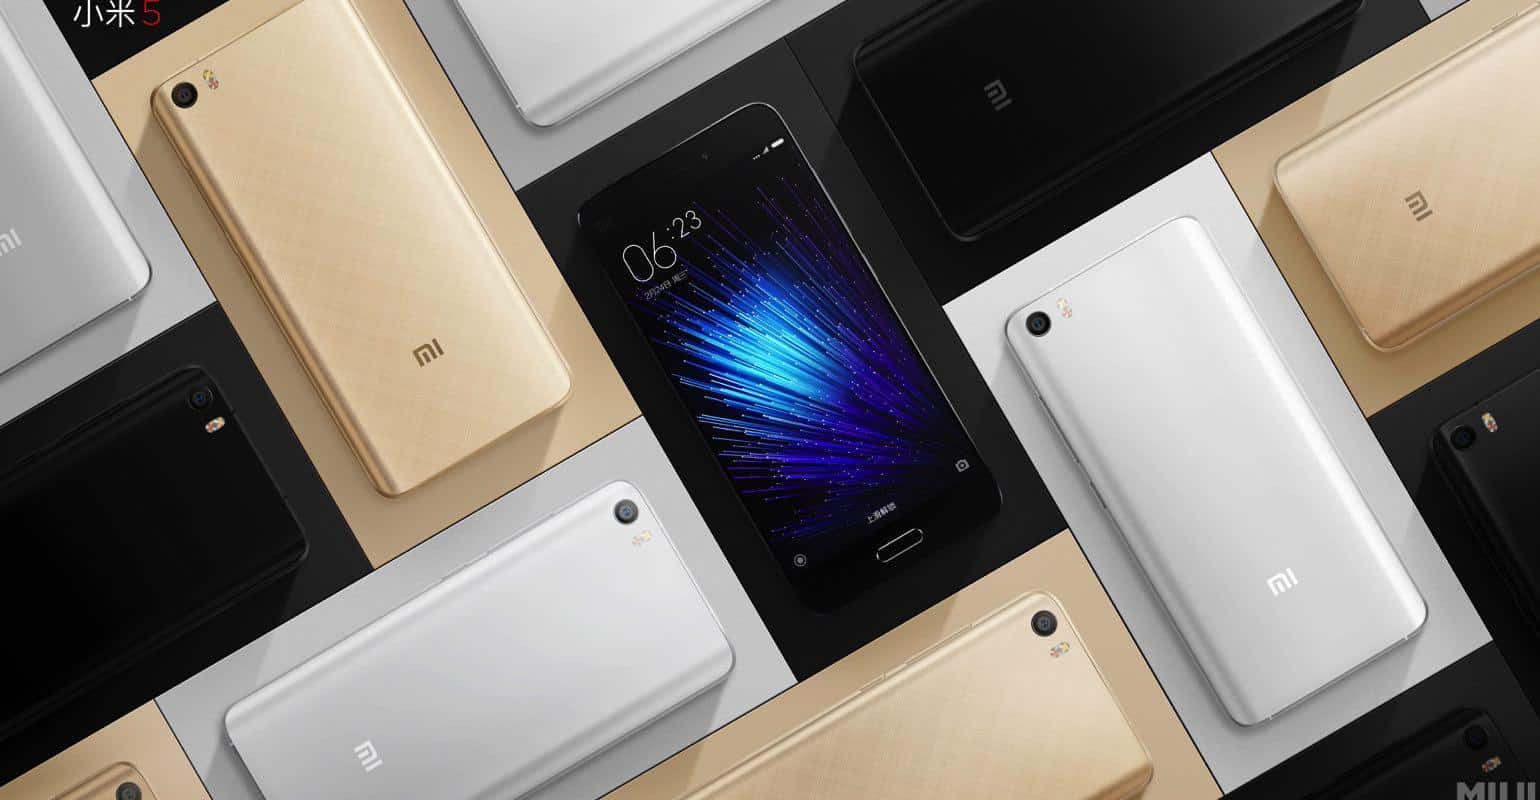 Xiaomi introduceert Xiaomi Mi 5 en Mi 4s, beschikbaar vanaf €245